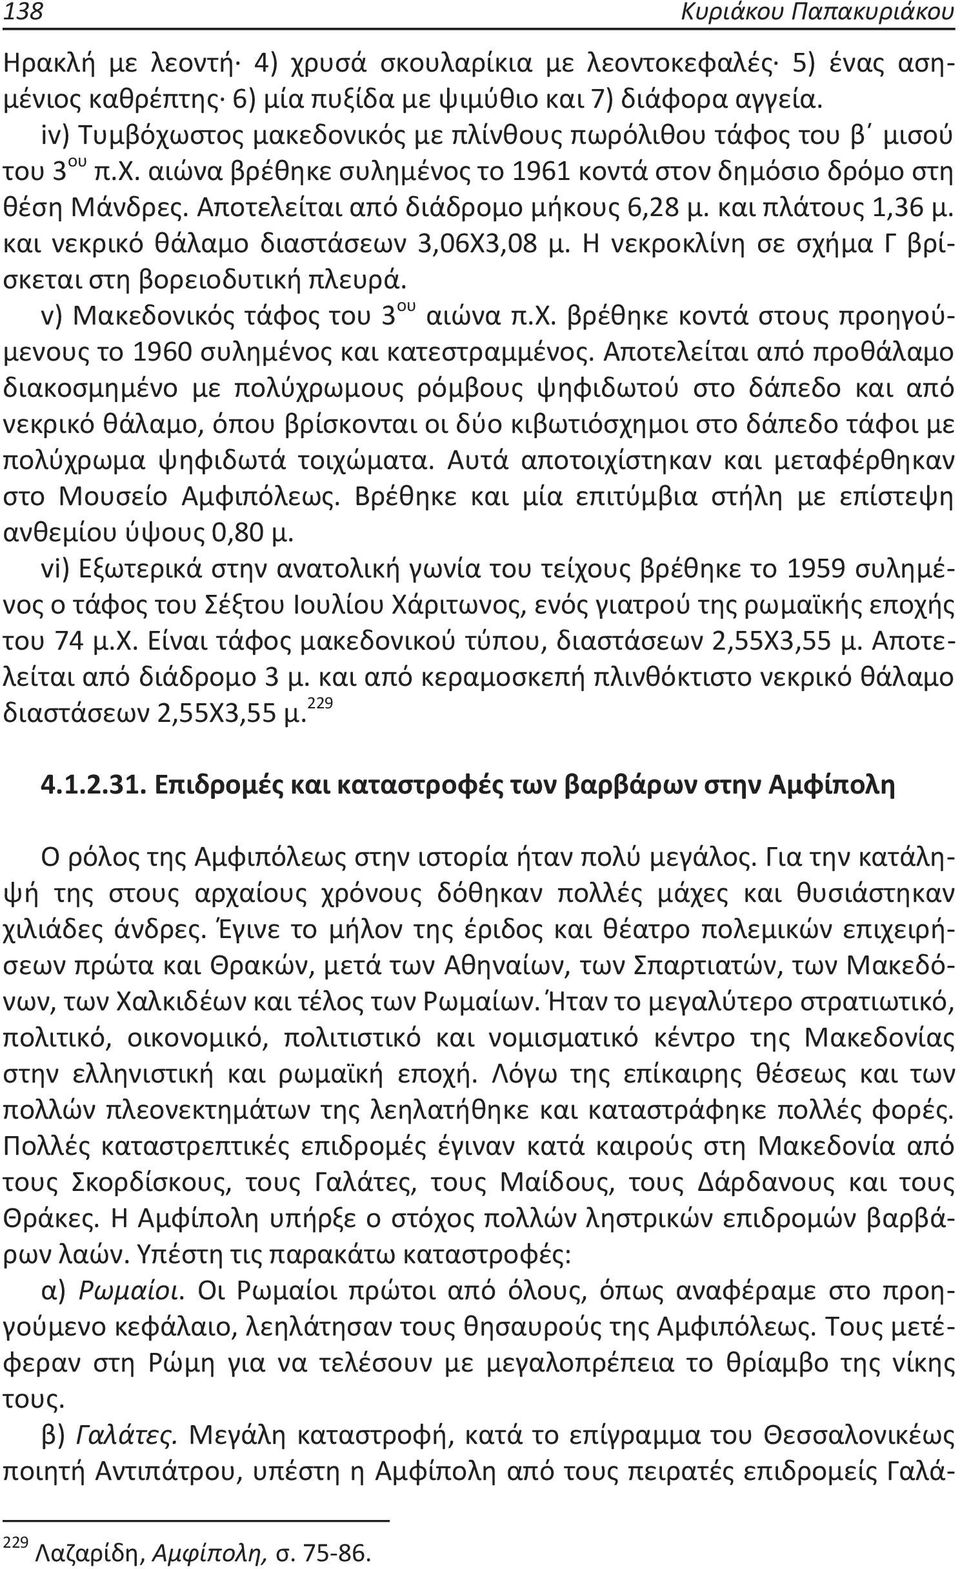 και πλάτους 1,36 μ. και νεκρικό θάλαμο διαστάσεων 3,06Χ3,08 μ. Η νεκροκλίνη σε σχήμα Γ βρίσκεται στη βορειοδυτική πλευρά. v) Μακεδονικός τάφος του 3 ου αιώνα π.χ. βρέθηκε κοντά στους προηγούμενους το 1960 συλημένος και κατεστραμμένος.